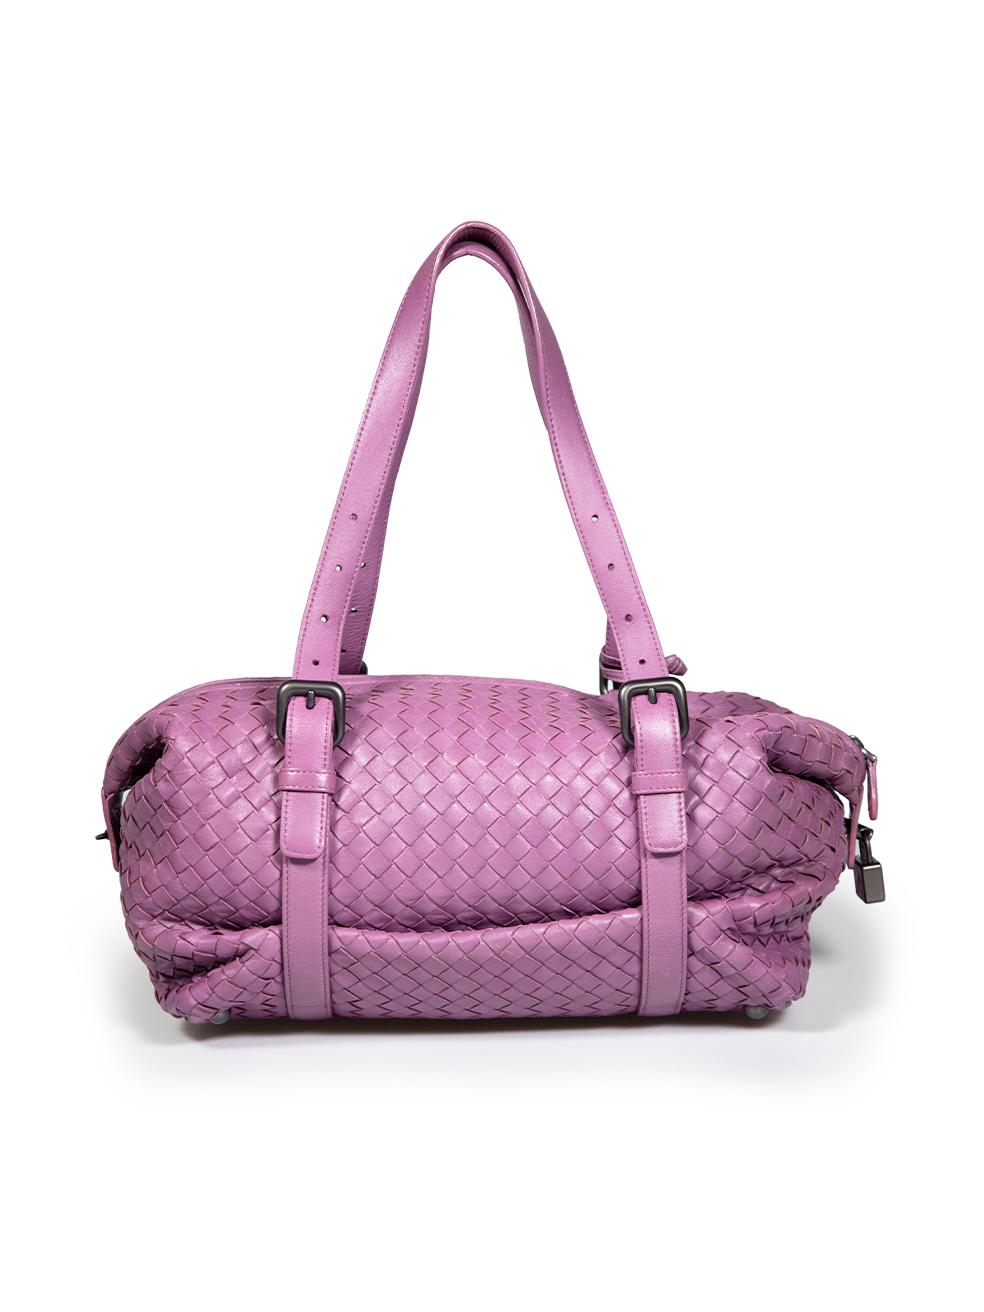 Bottega Veneta Purple Leather Intrecciato Montaigne Shoulder Bag In Good Condition For Sale In London, GB